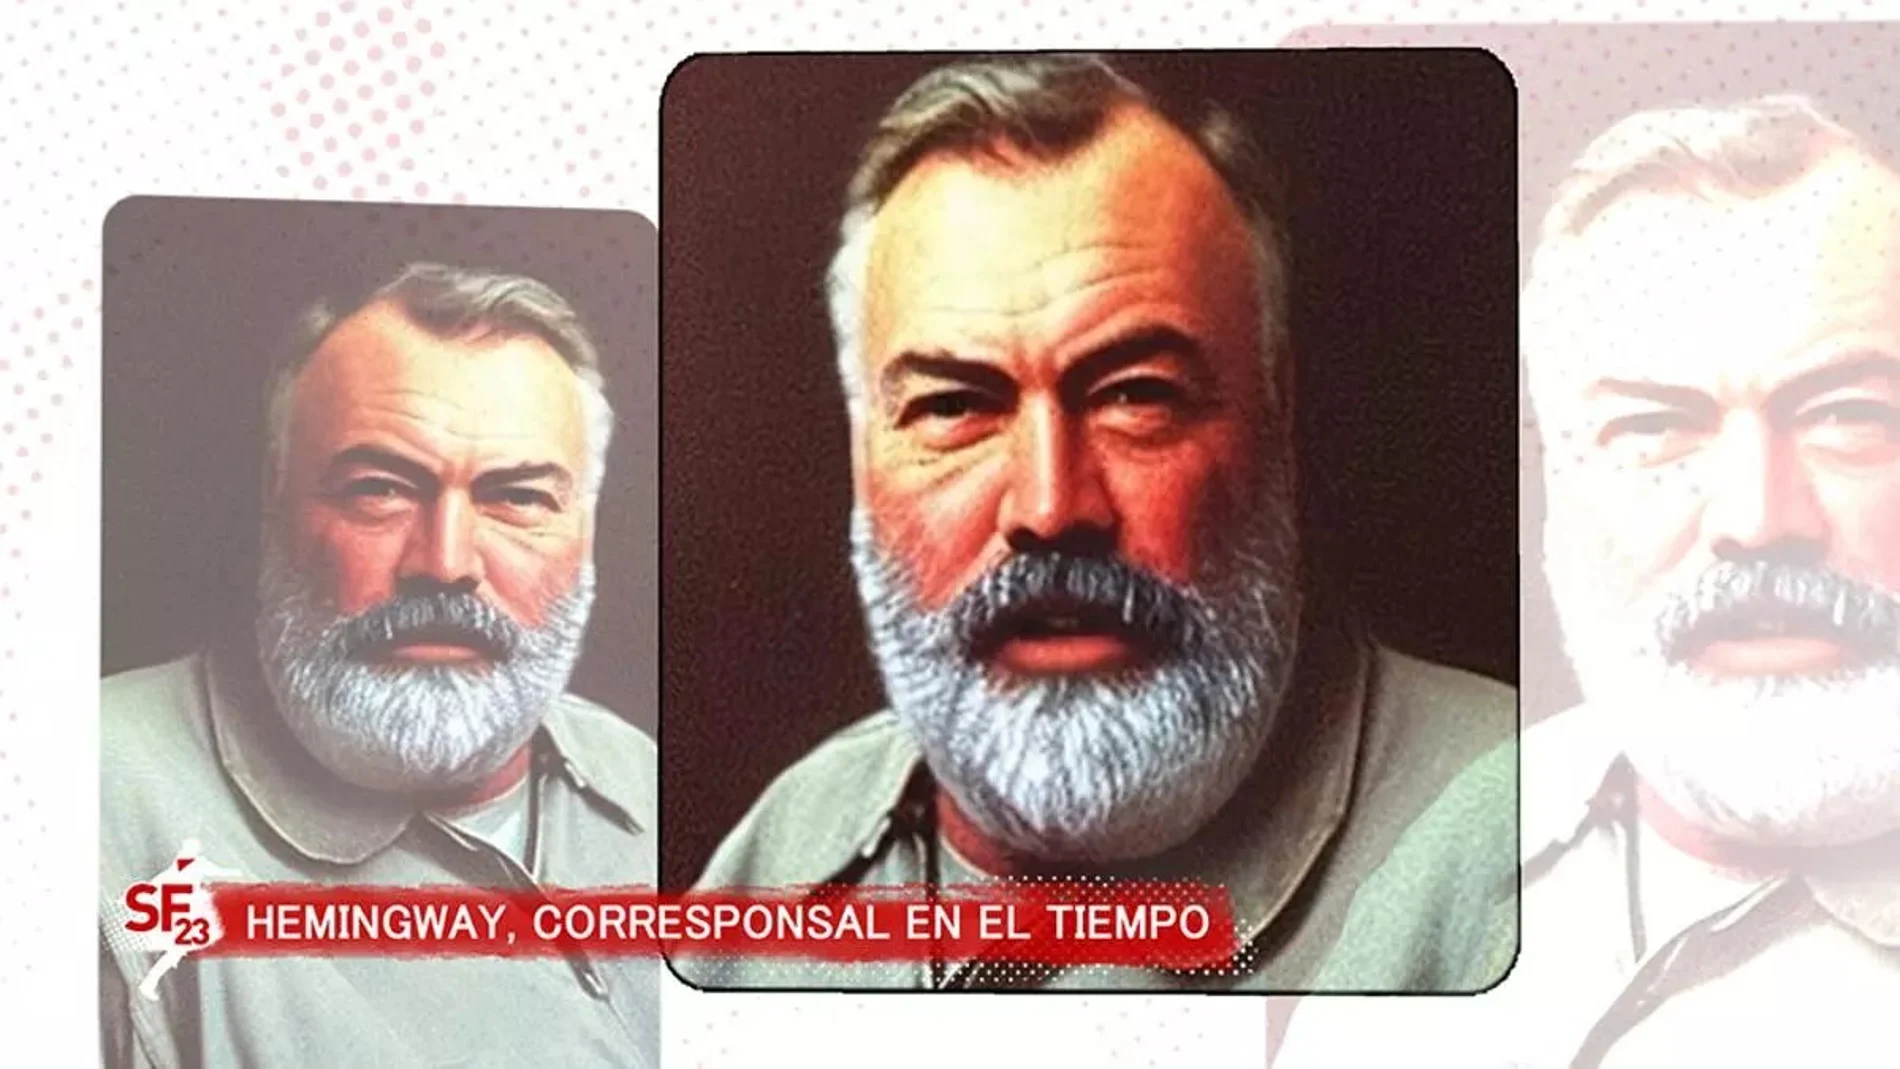 RTVE incorpora a Hemingway como "corresponsal en el tiempo" de Sanfermines 2023 gracias a la IA